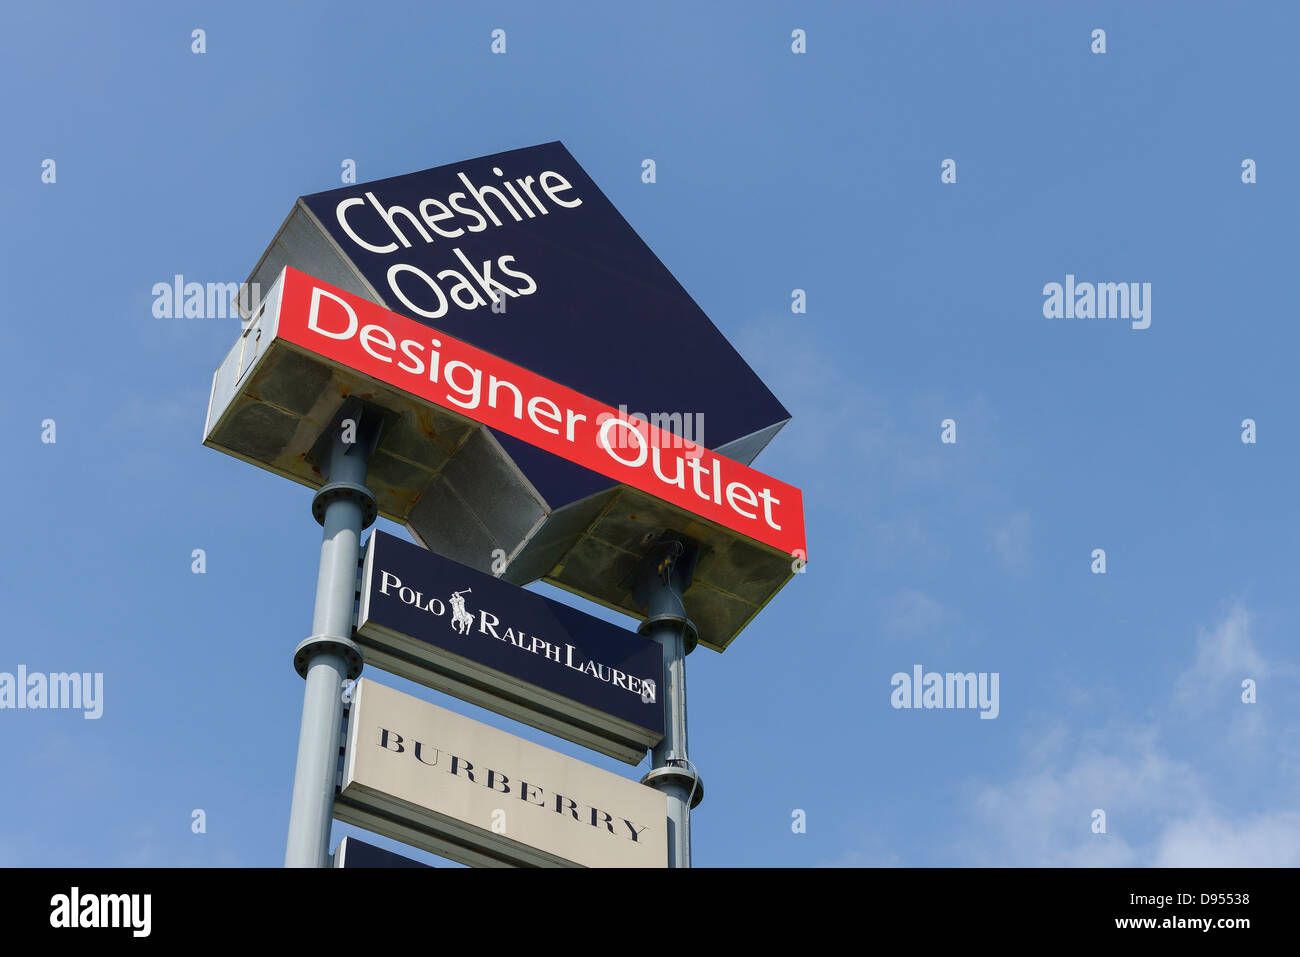 Cheshire Oaks Designer Outlet Shopping Centre Ellesmere Port UK Banque D'Images